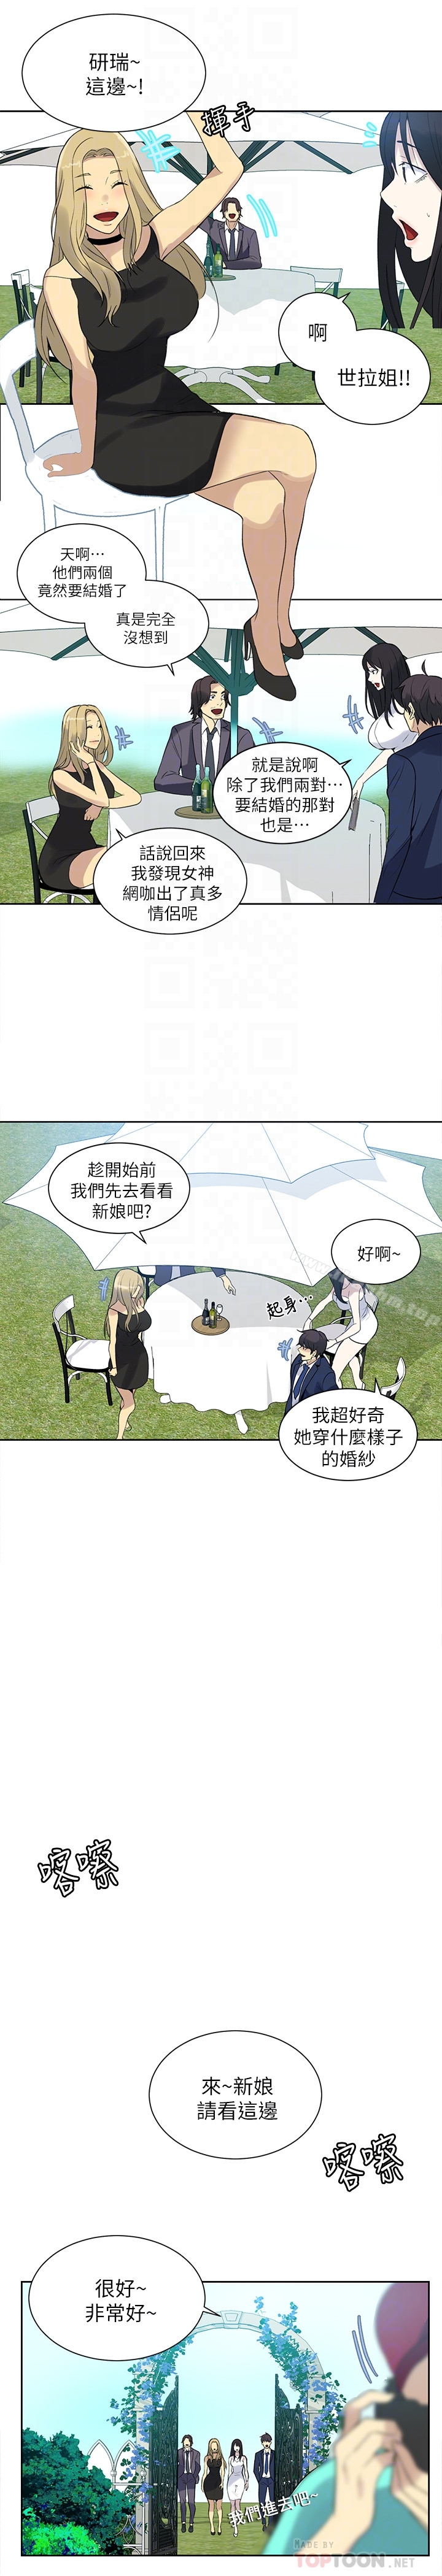 女神網咖漫画 免费阅读 女神网咖 最终话-準新娘的最后一次服务 7.jpg